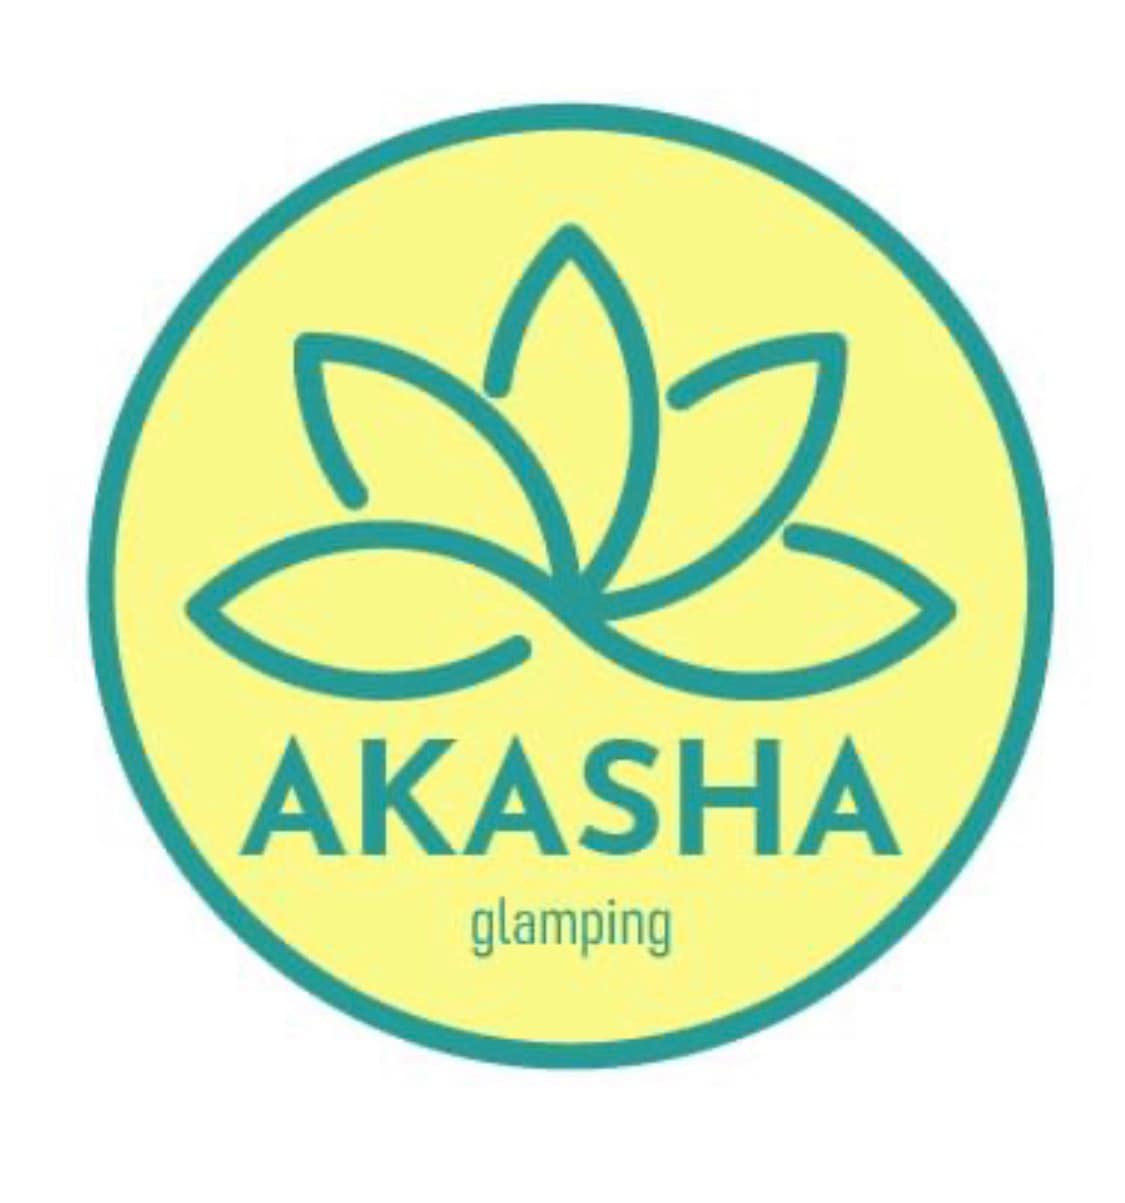 Akasha glamping